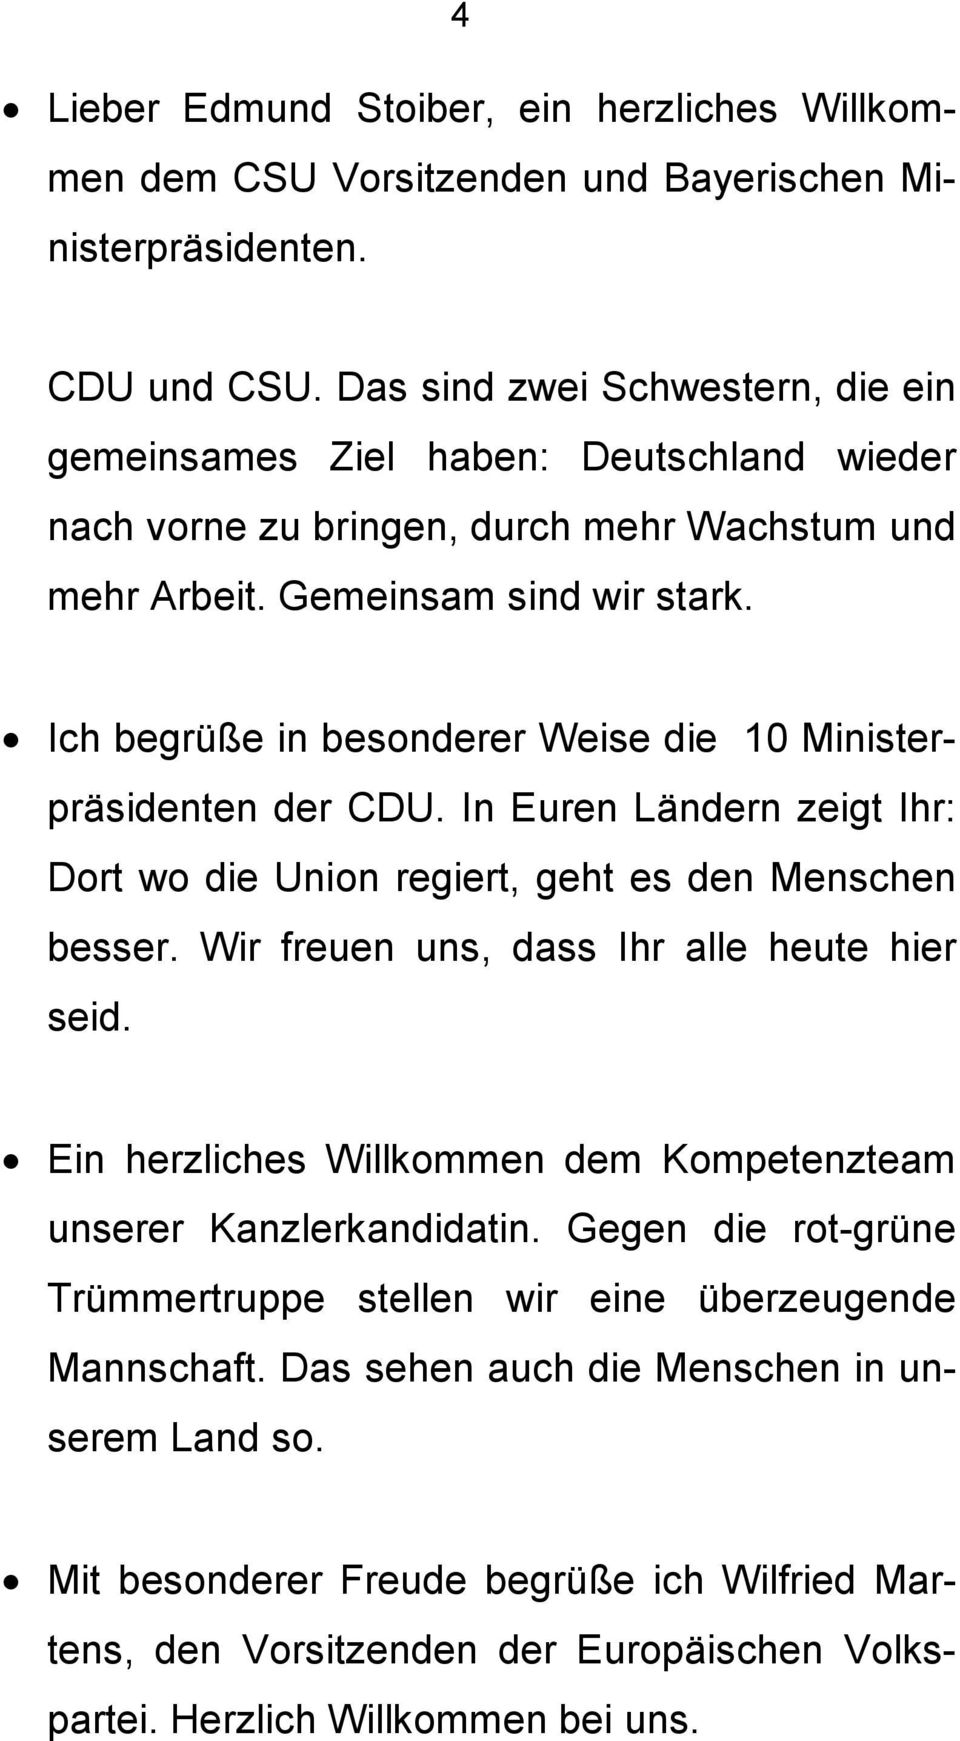 Ich begrüße in besonderer Weise die 10 Ministerpräsidenten der CDU. In Euren Ländern zeigt Ihr: Dort wo die Union regiert, geht es den Menschen besser. Wir freuen uns, dass Ihr alle heute hier seid.